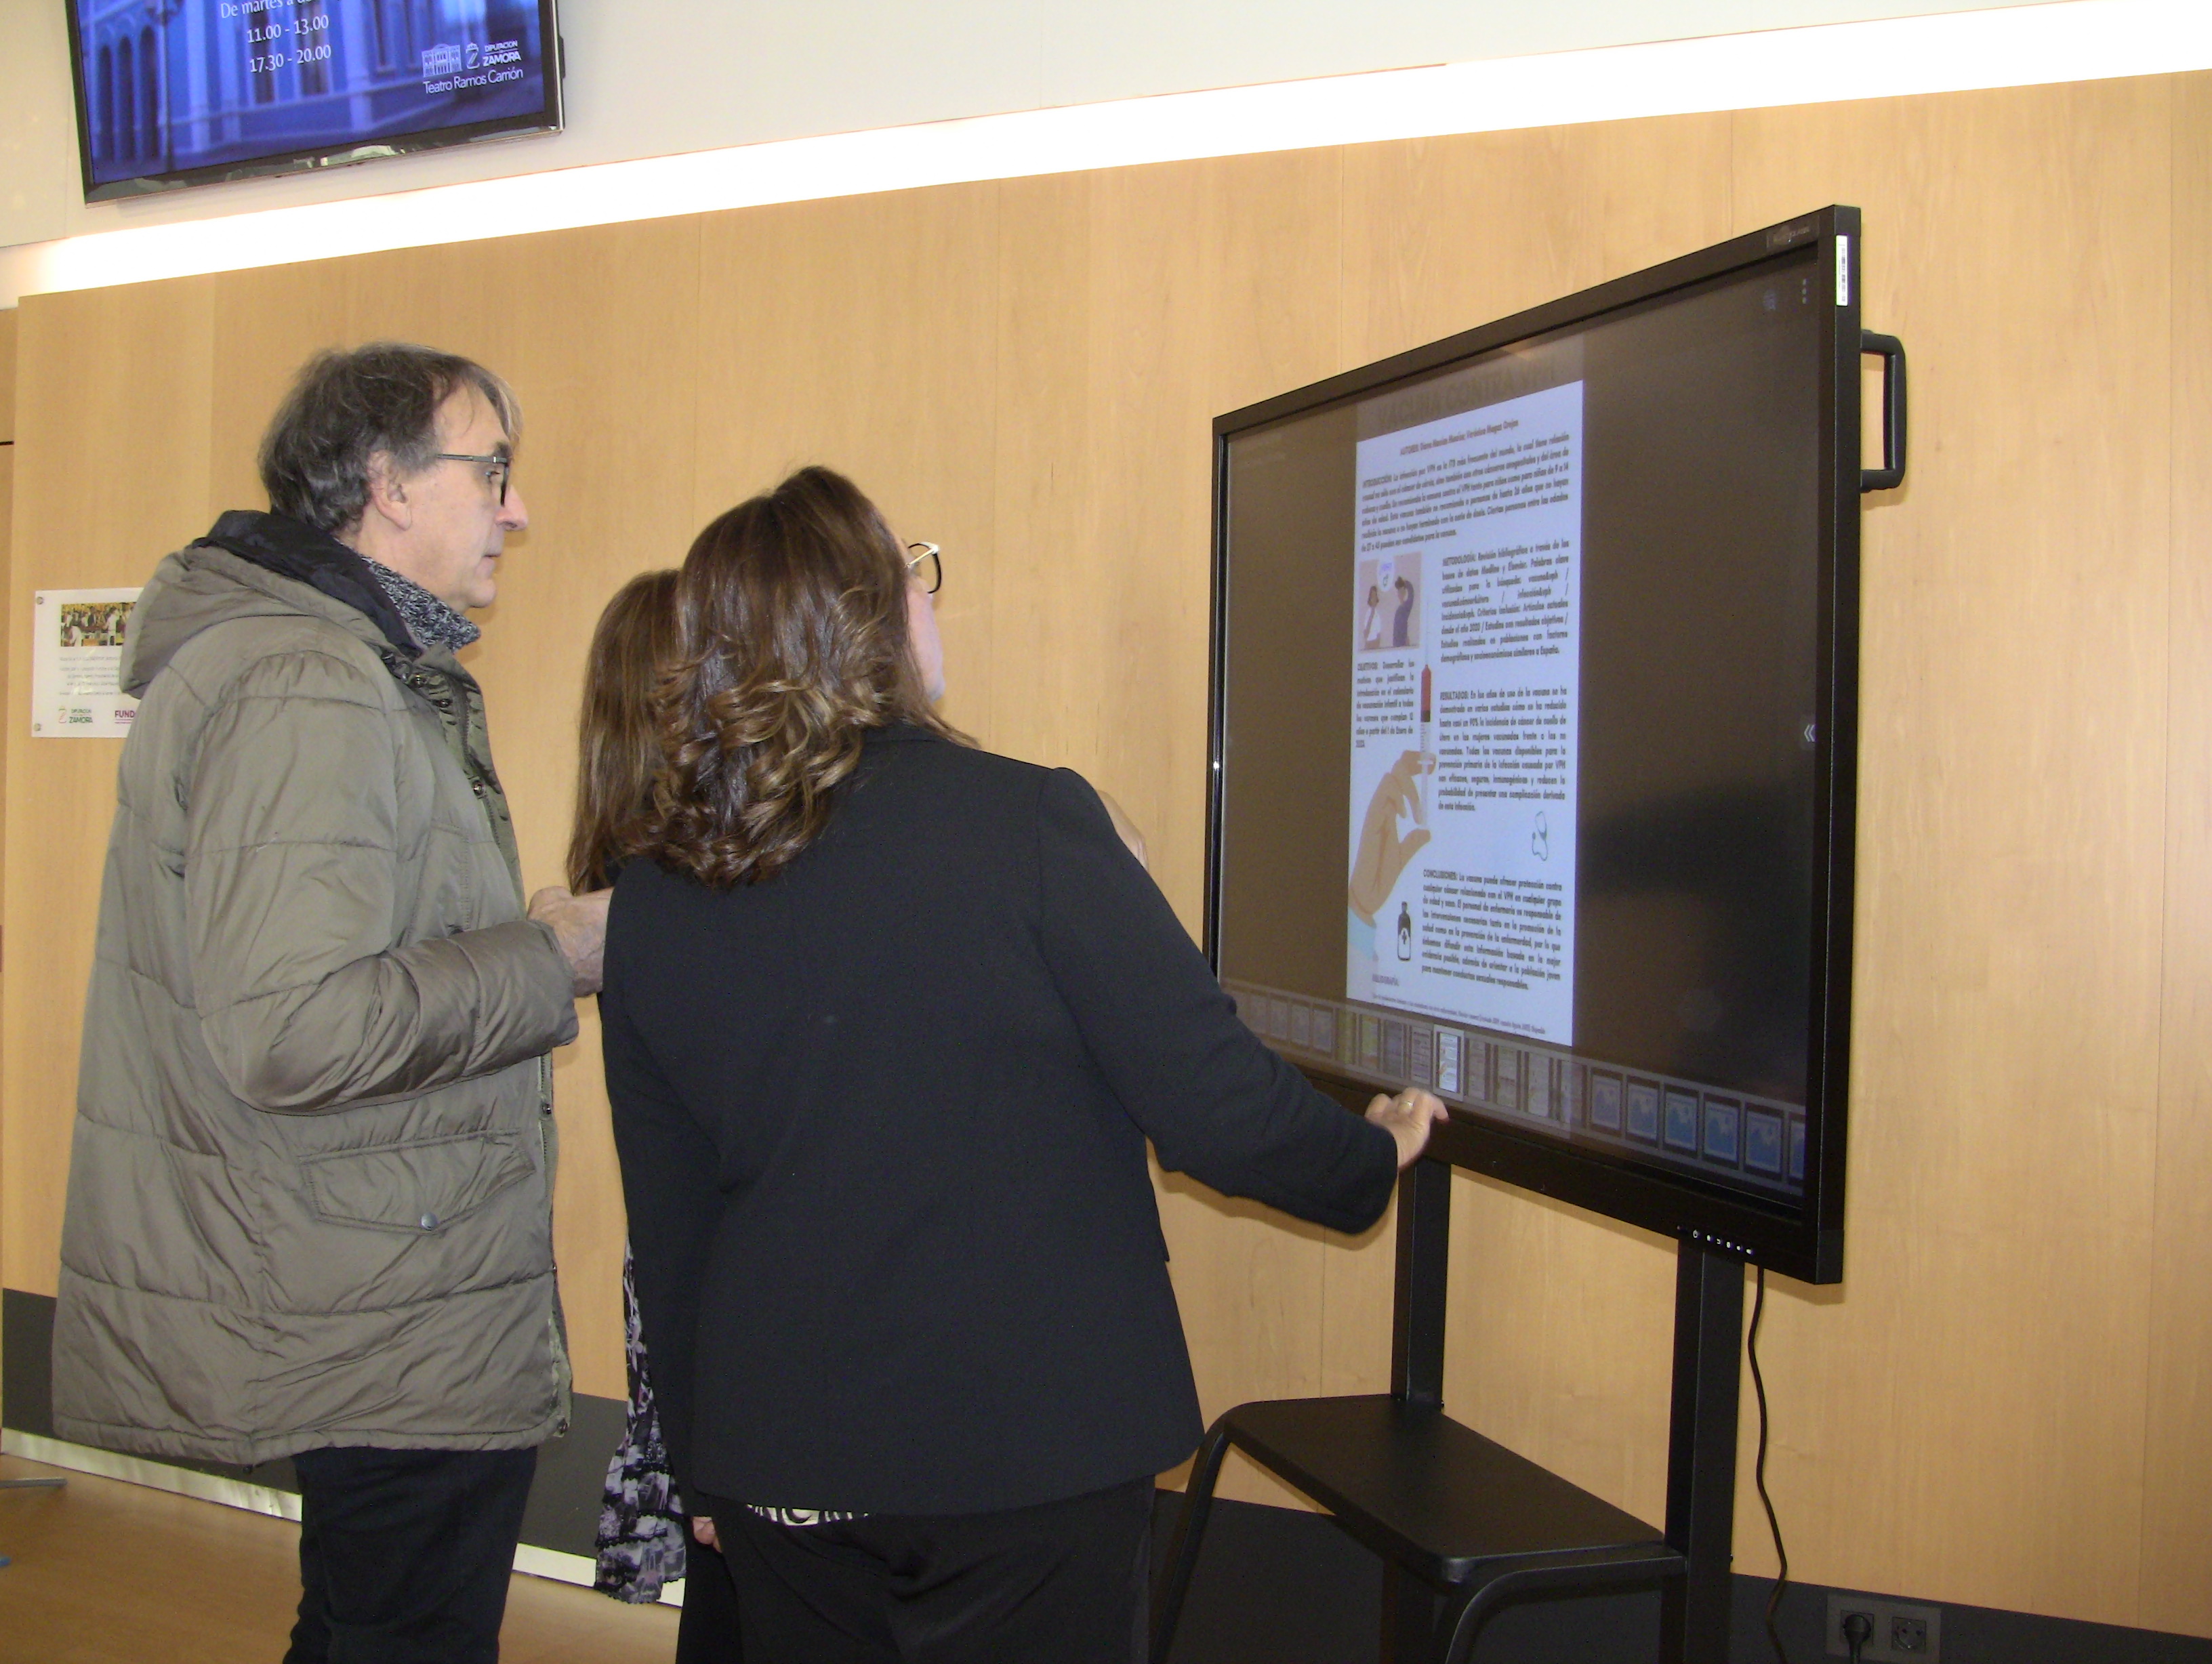 La secretaria general de SATSE Castilla y León, Mercedes Gago, observa los pósteres presentados junto a otros asistentes